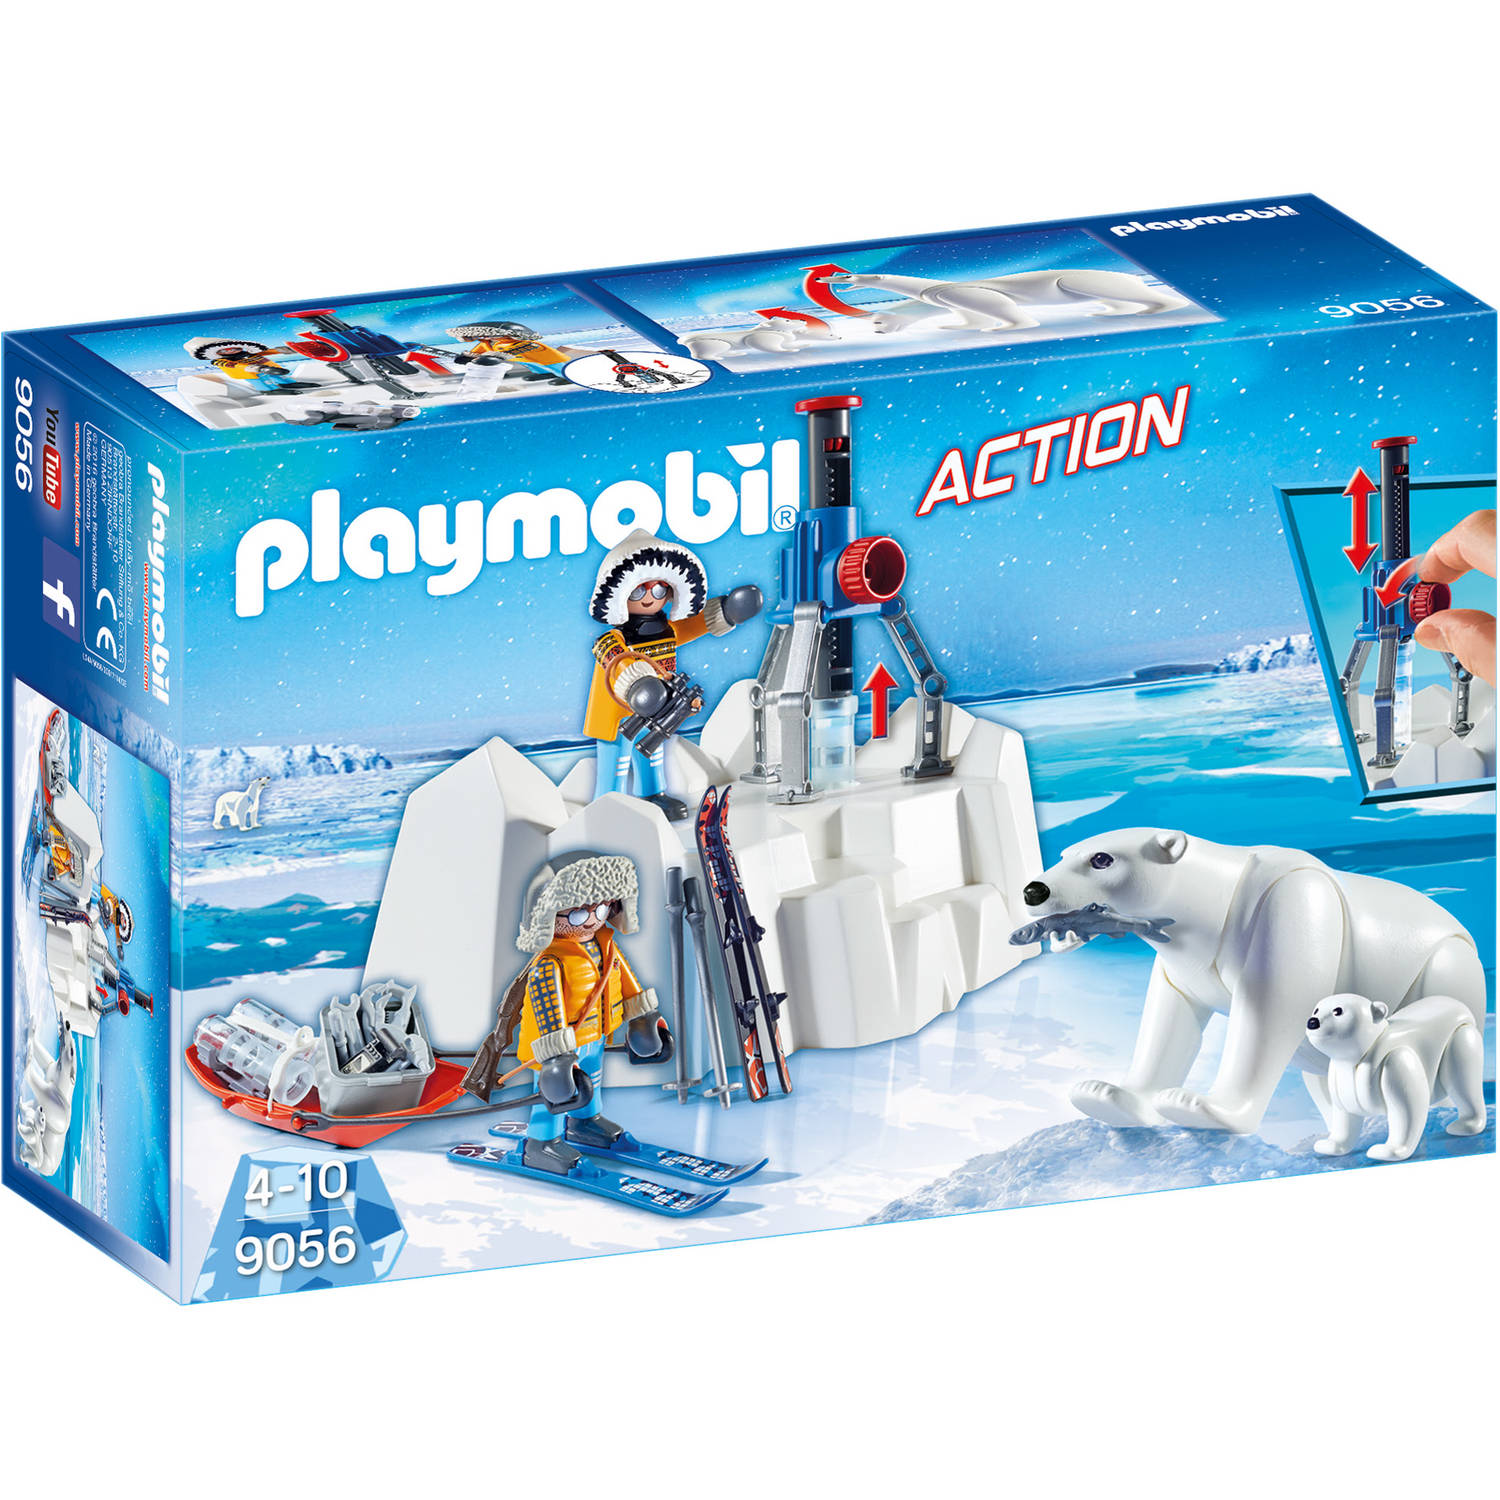 Poolreizigers met ijsberen Playmobil (9056)